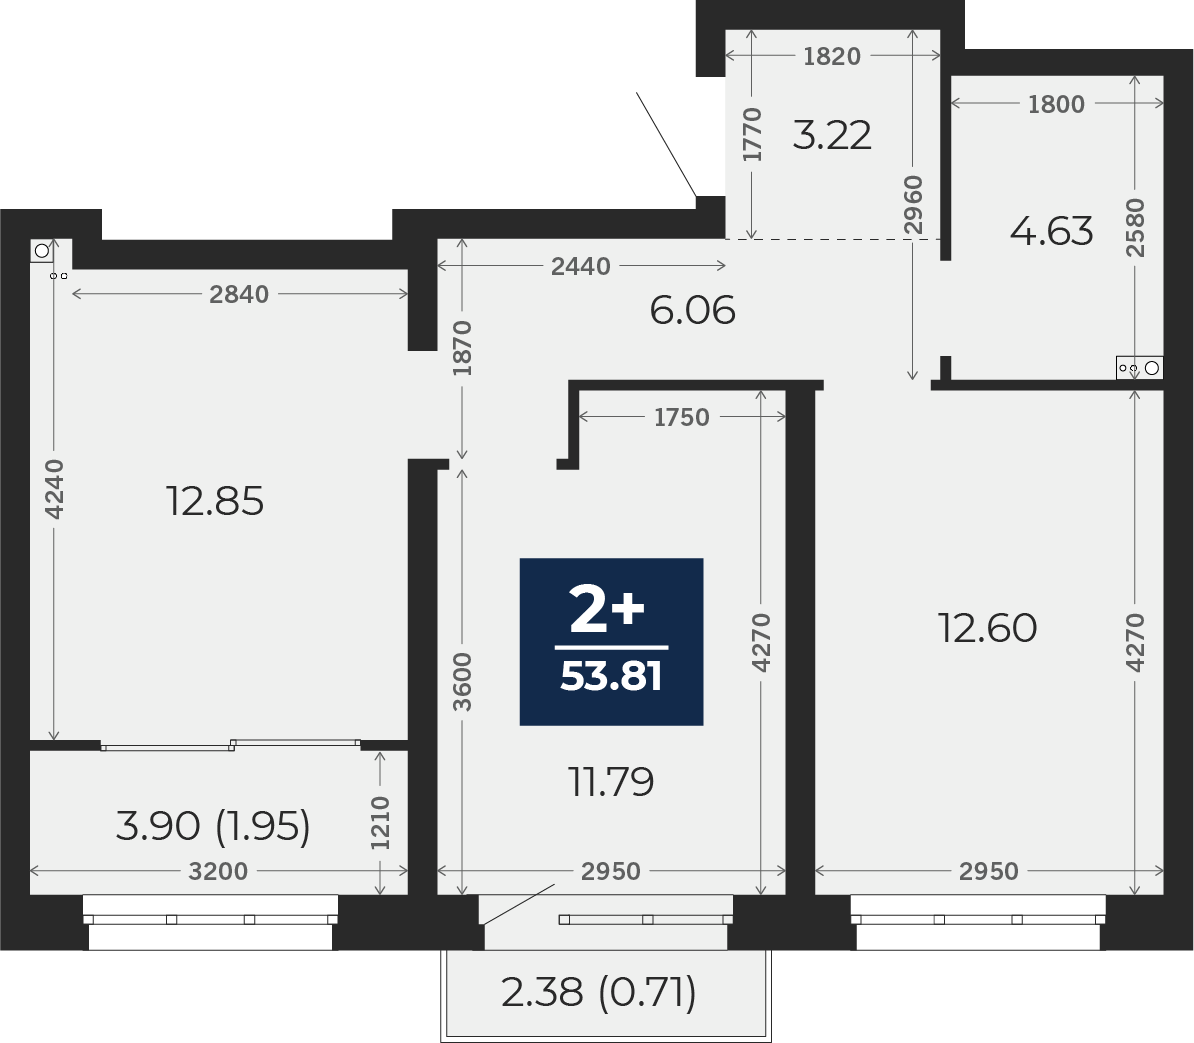 Квартира № 582, 2-комнатная, 53.81 кв. м, 8 этаж